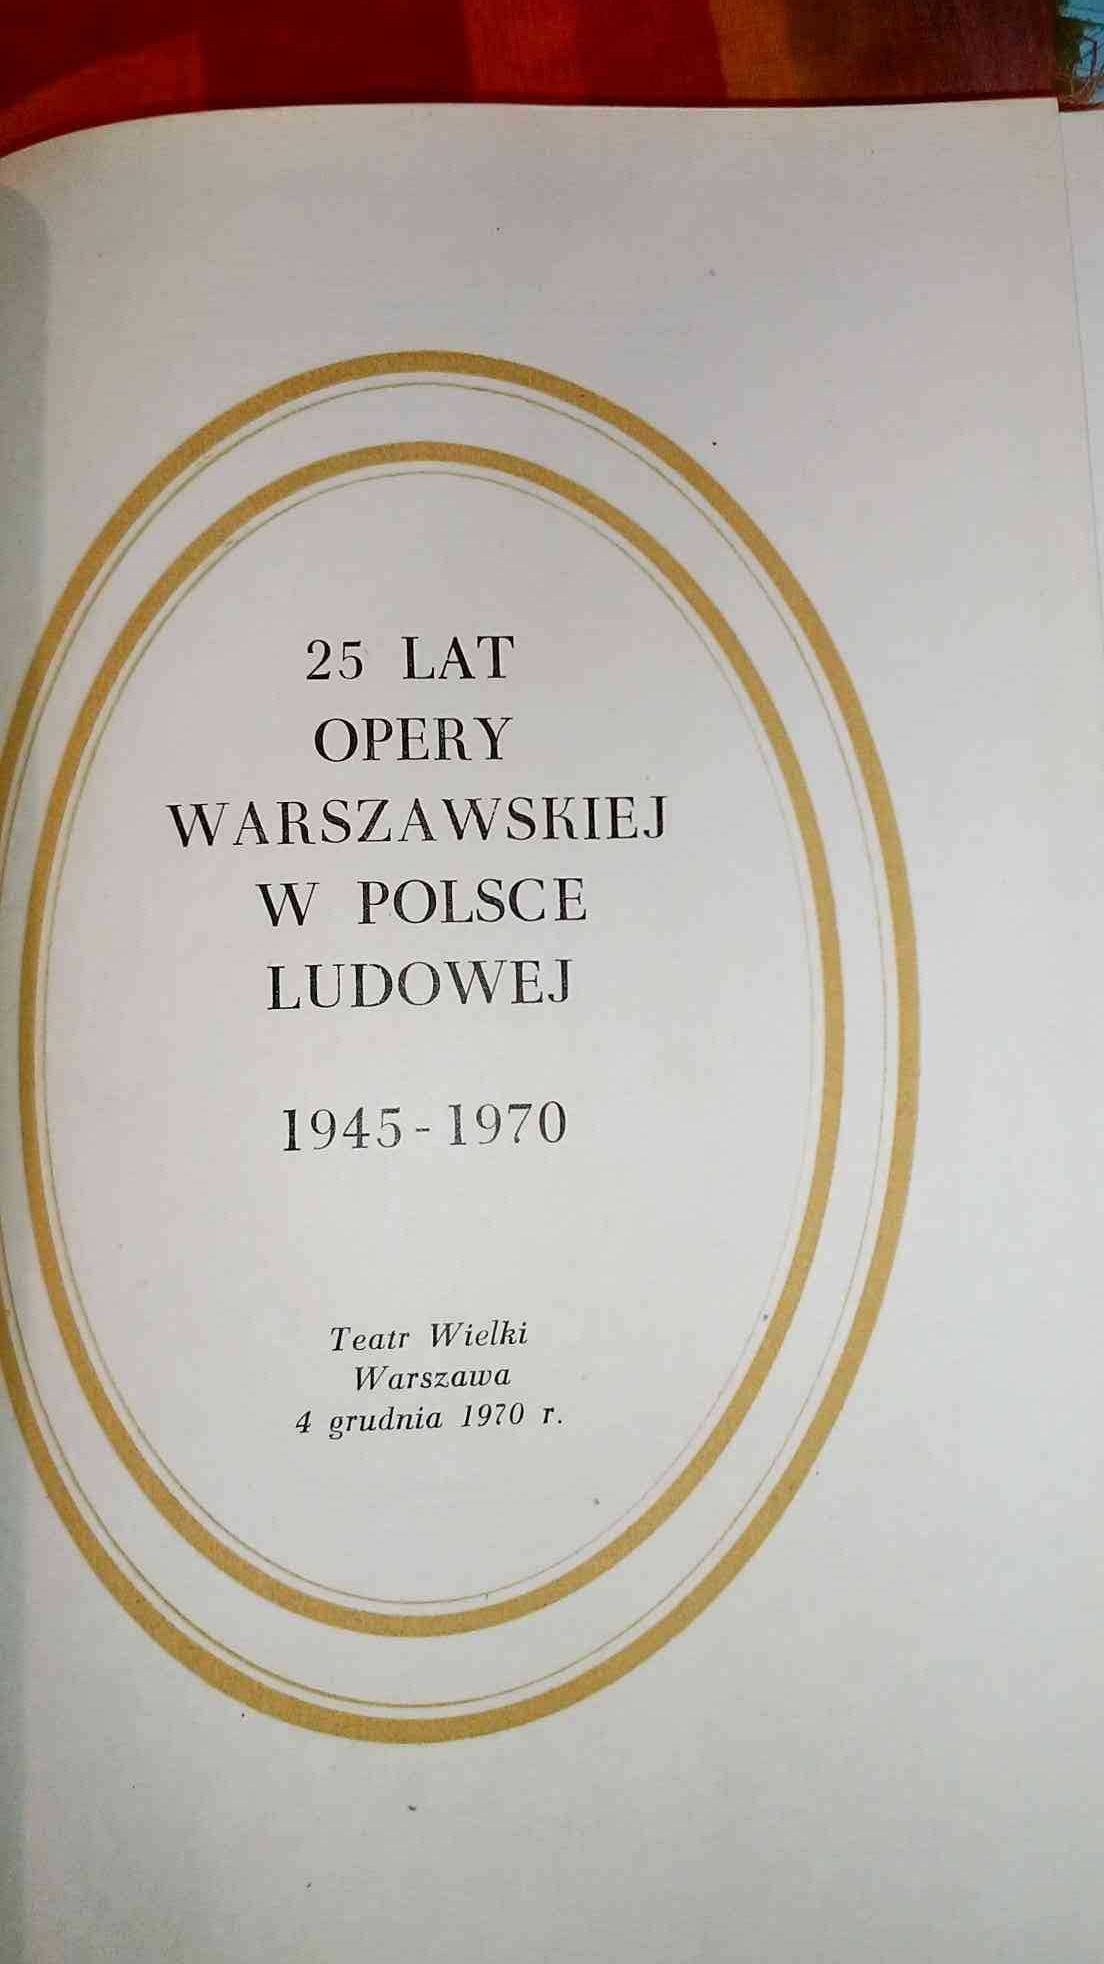 25-lat
Opery
Warszawskiej
W Polsce
Ludowej